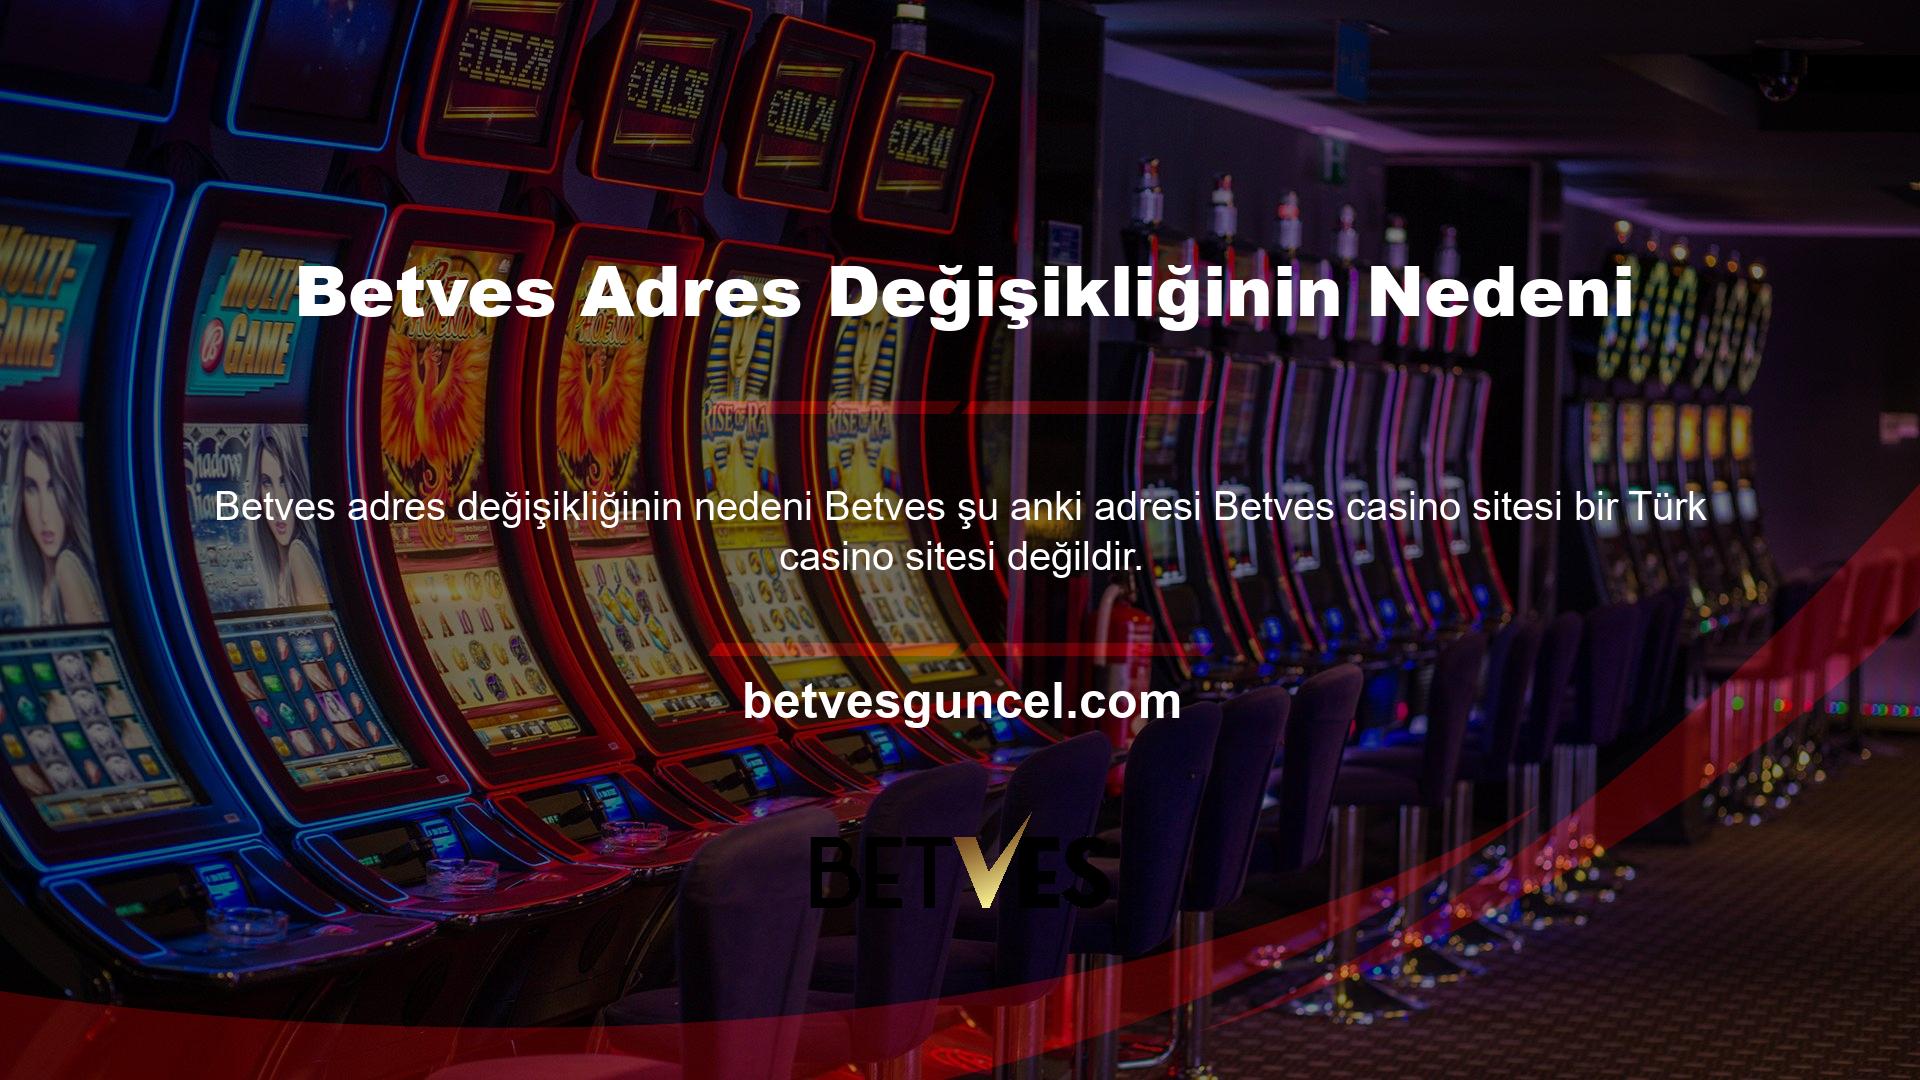 Casino hizmetleri Türkiye'de vergilendirilir